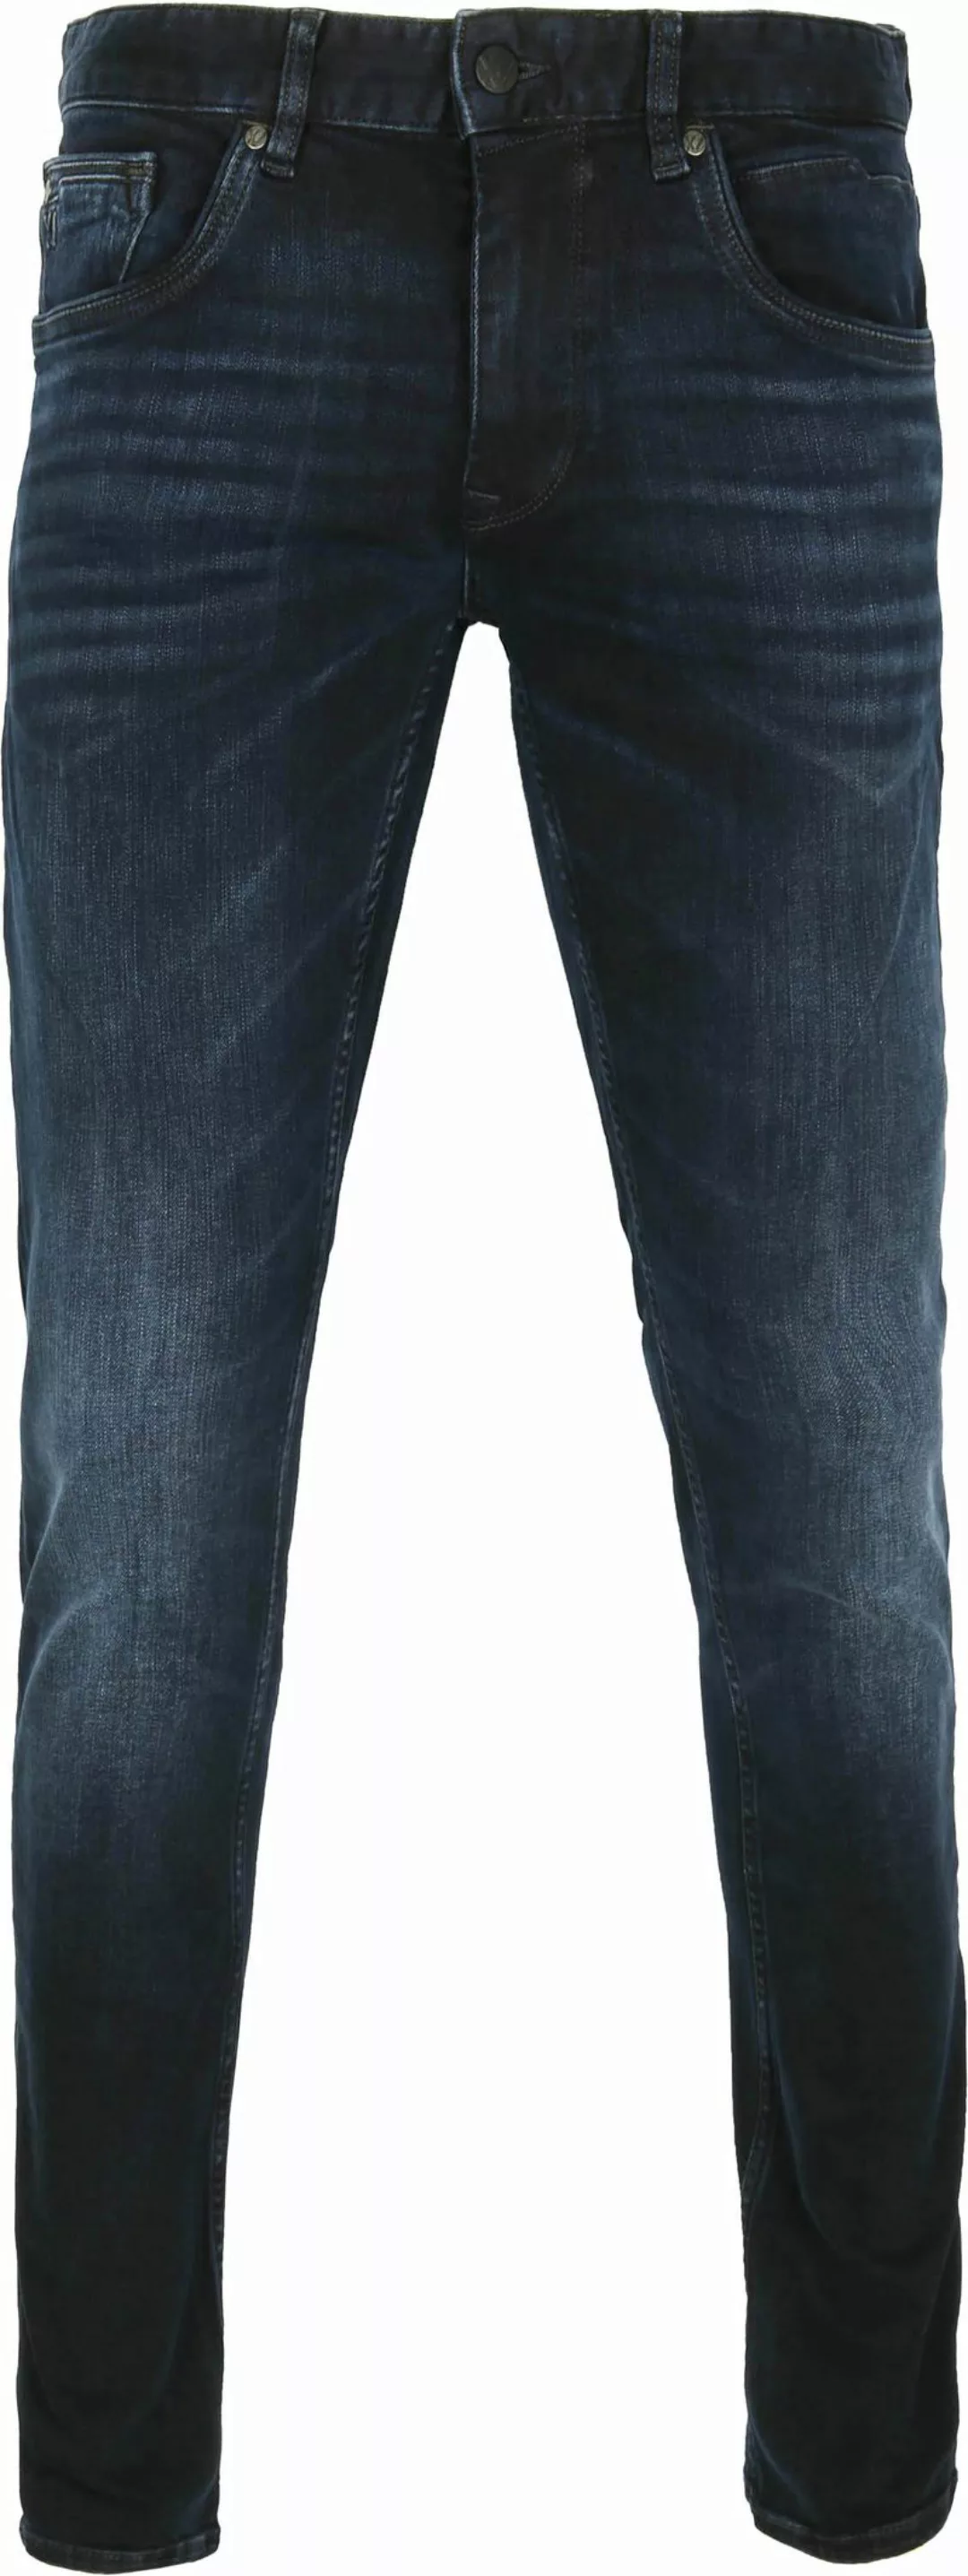 PME Legend XV Jeans Blue Black PTR150 - Größe W 31 - L 30 günstig online kaufen